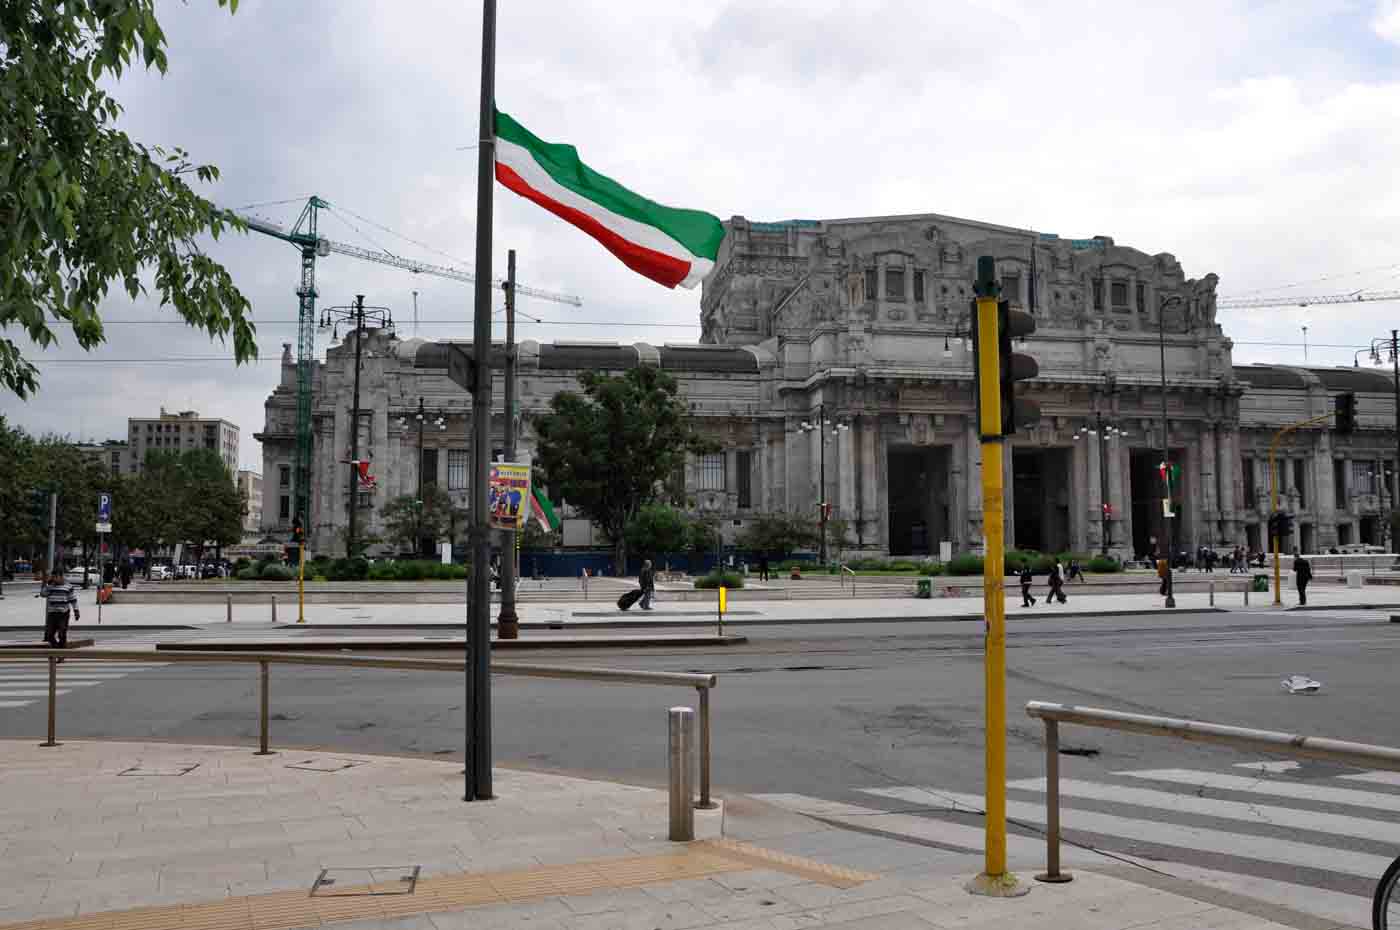 ستازيون سنترال – محطة سكة حديد ميلانو الكبرى